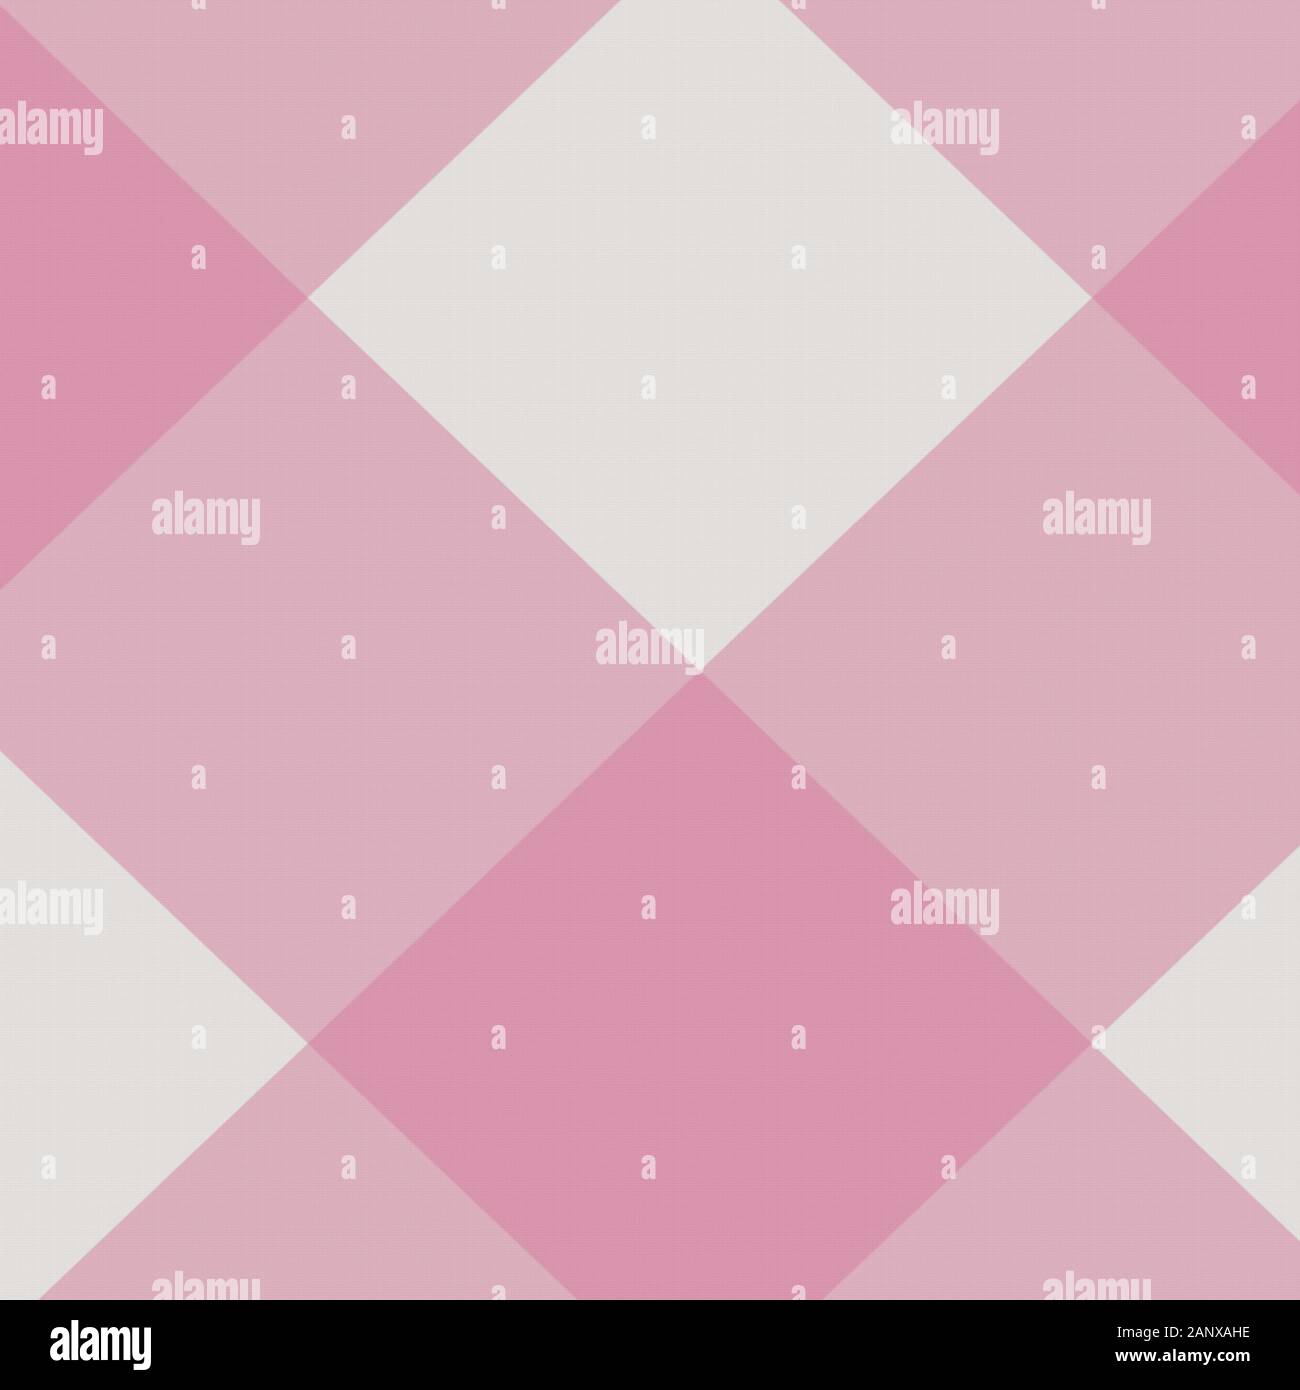 Fond diagonal de plaid de buffle rose et crème dans le tartan écossais plus grand modèle. feuilles de papier numériques 12 x 12 en forme de losanges géométriques i Banque D'Images